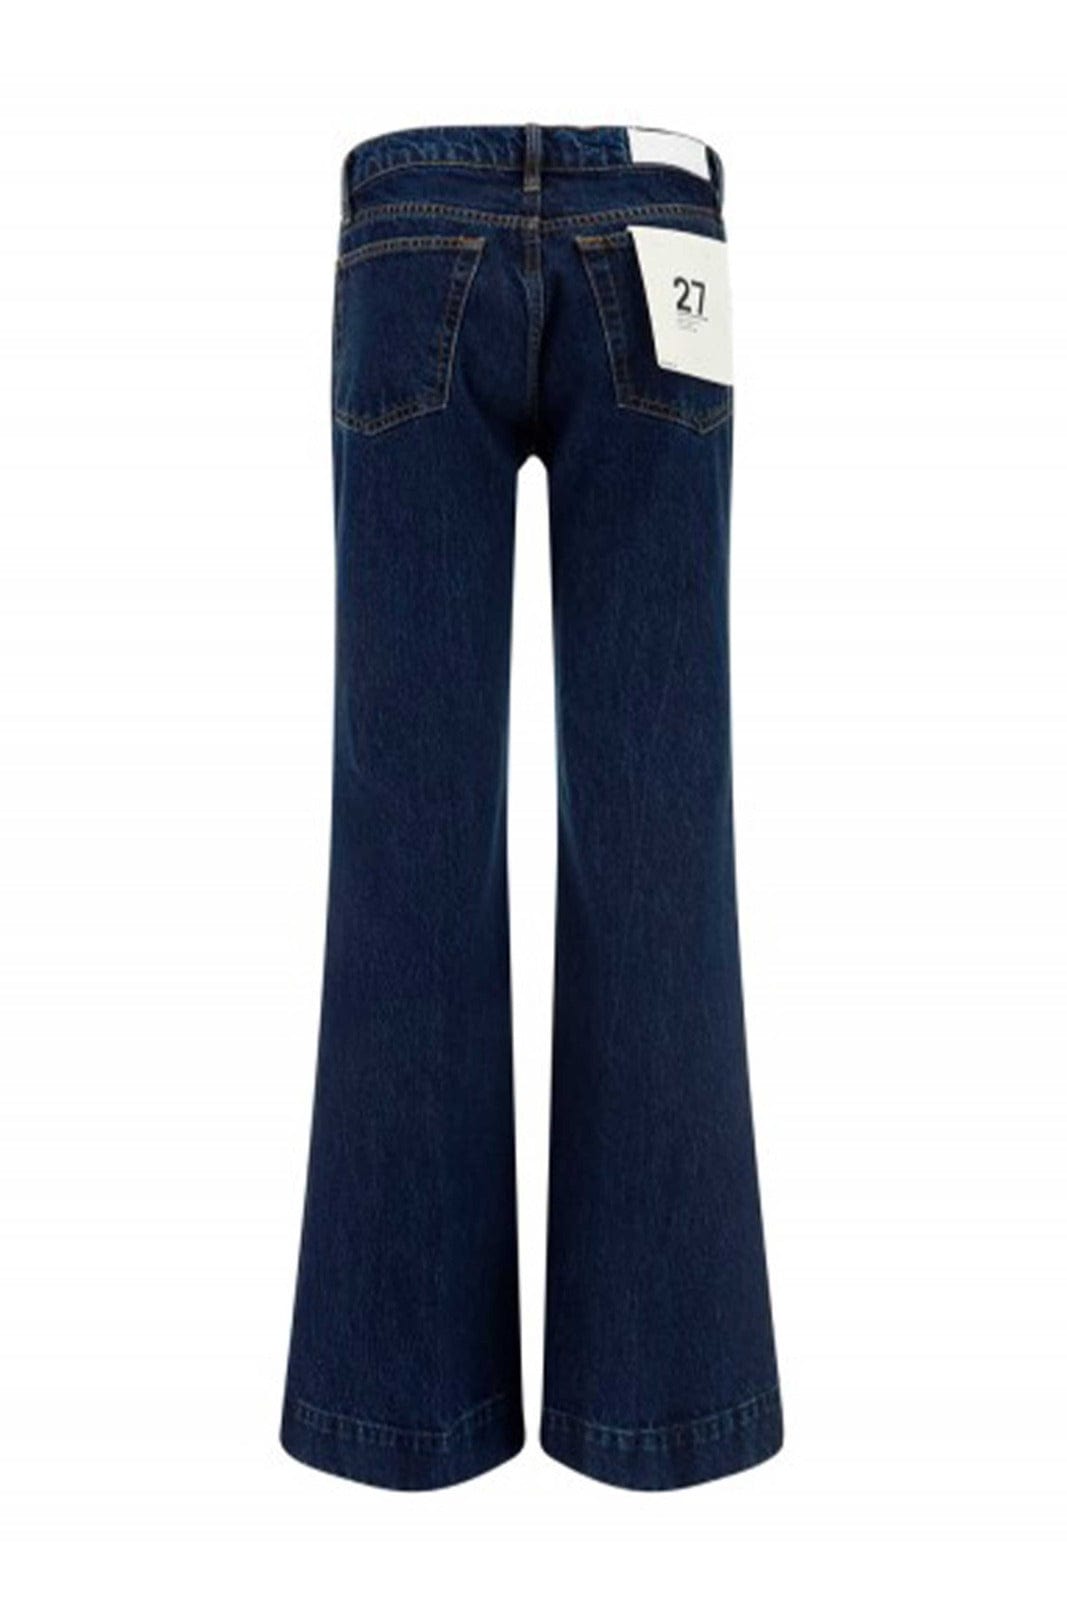 RE/DONE PANTALONE IN DENIM  Jeans Flare Blu Re/Done